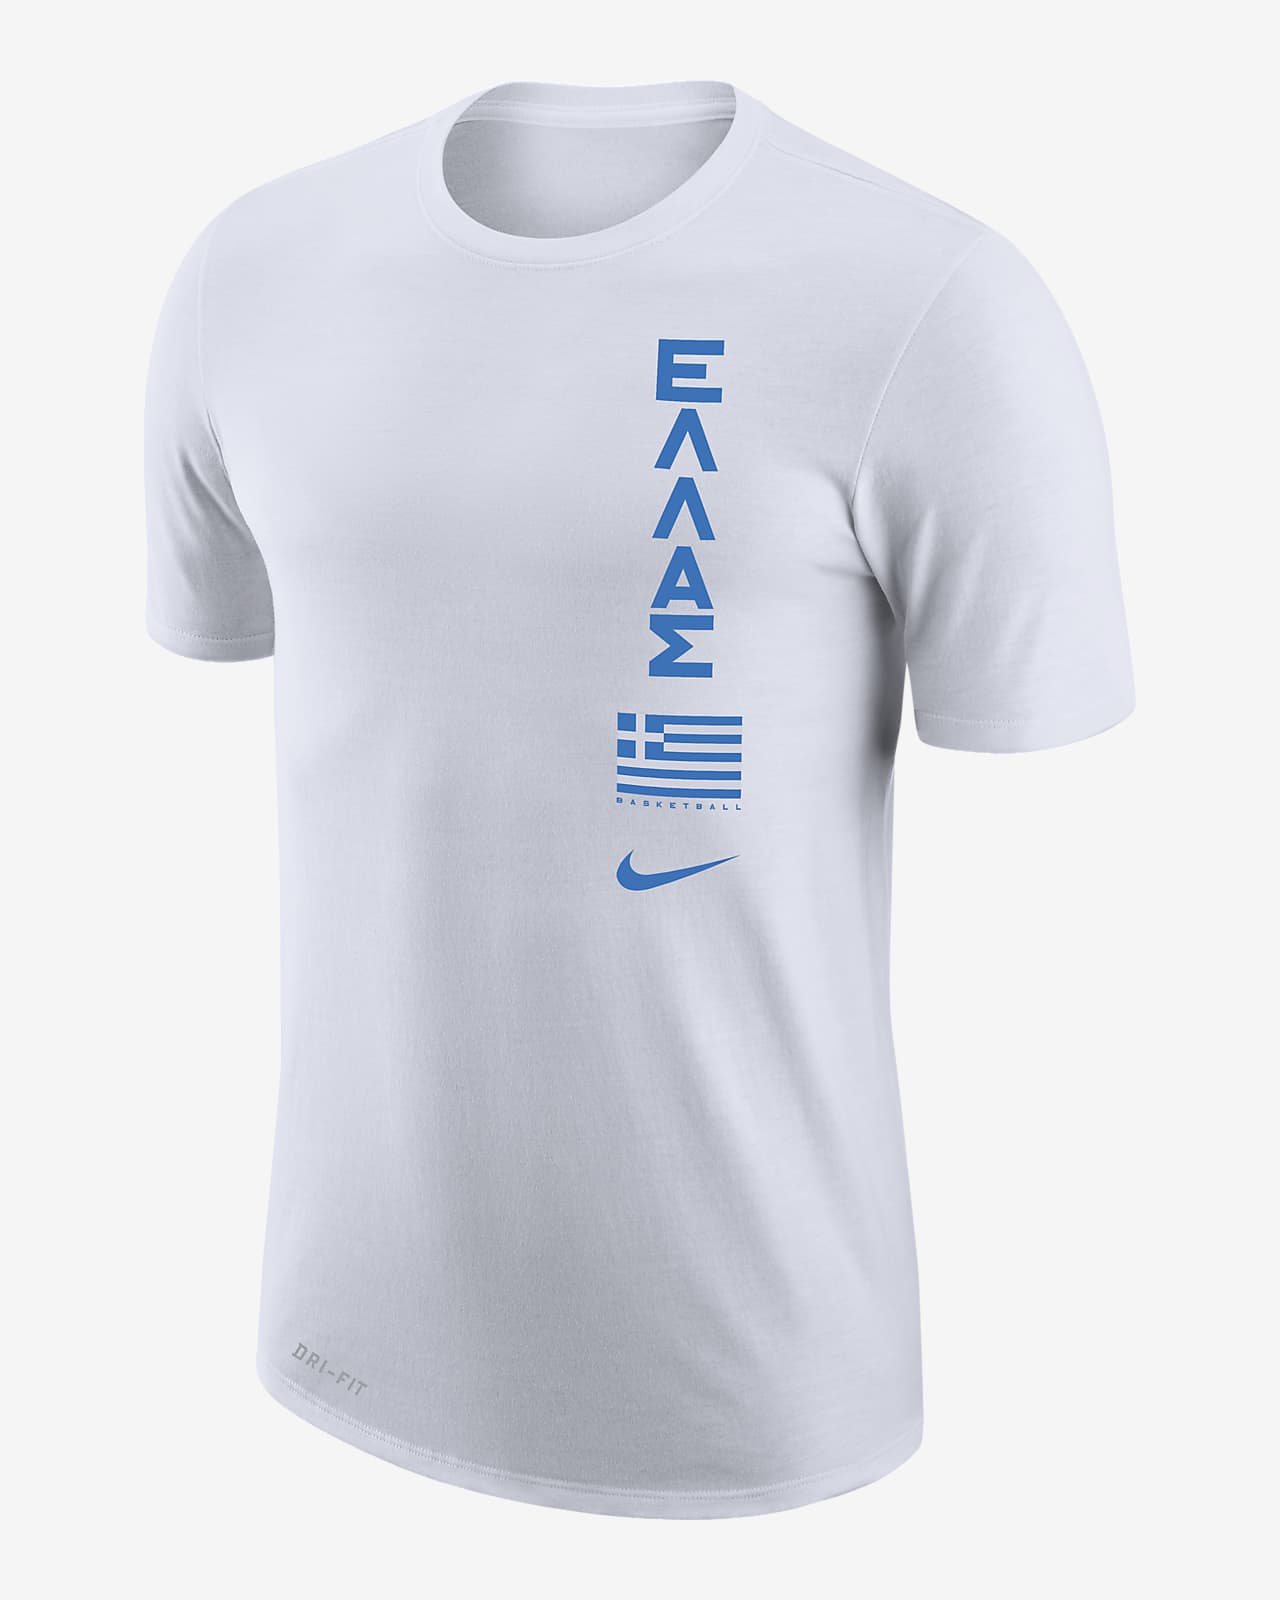 Ανδρικό T-Shirt μπάσκετ Nike Dri-FIT Ελλάδα